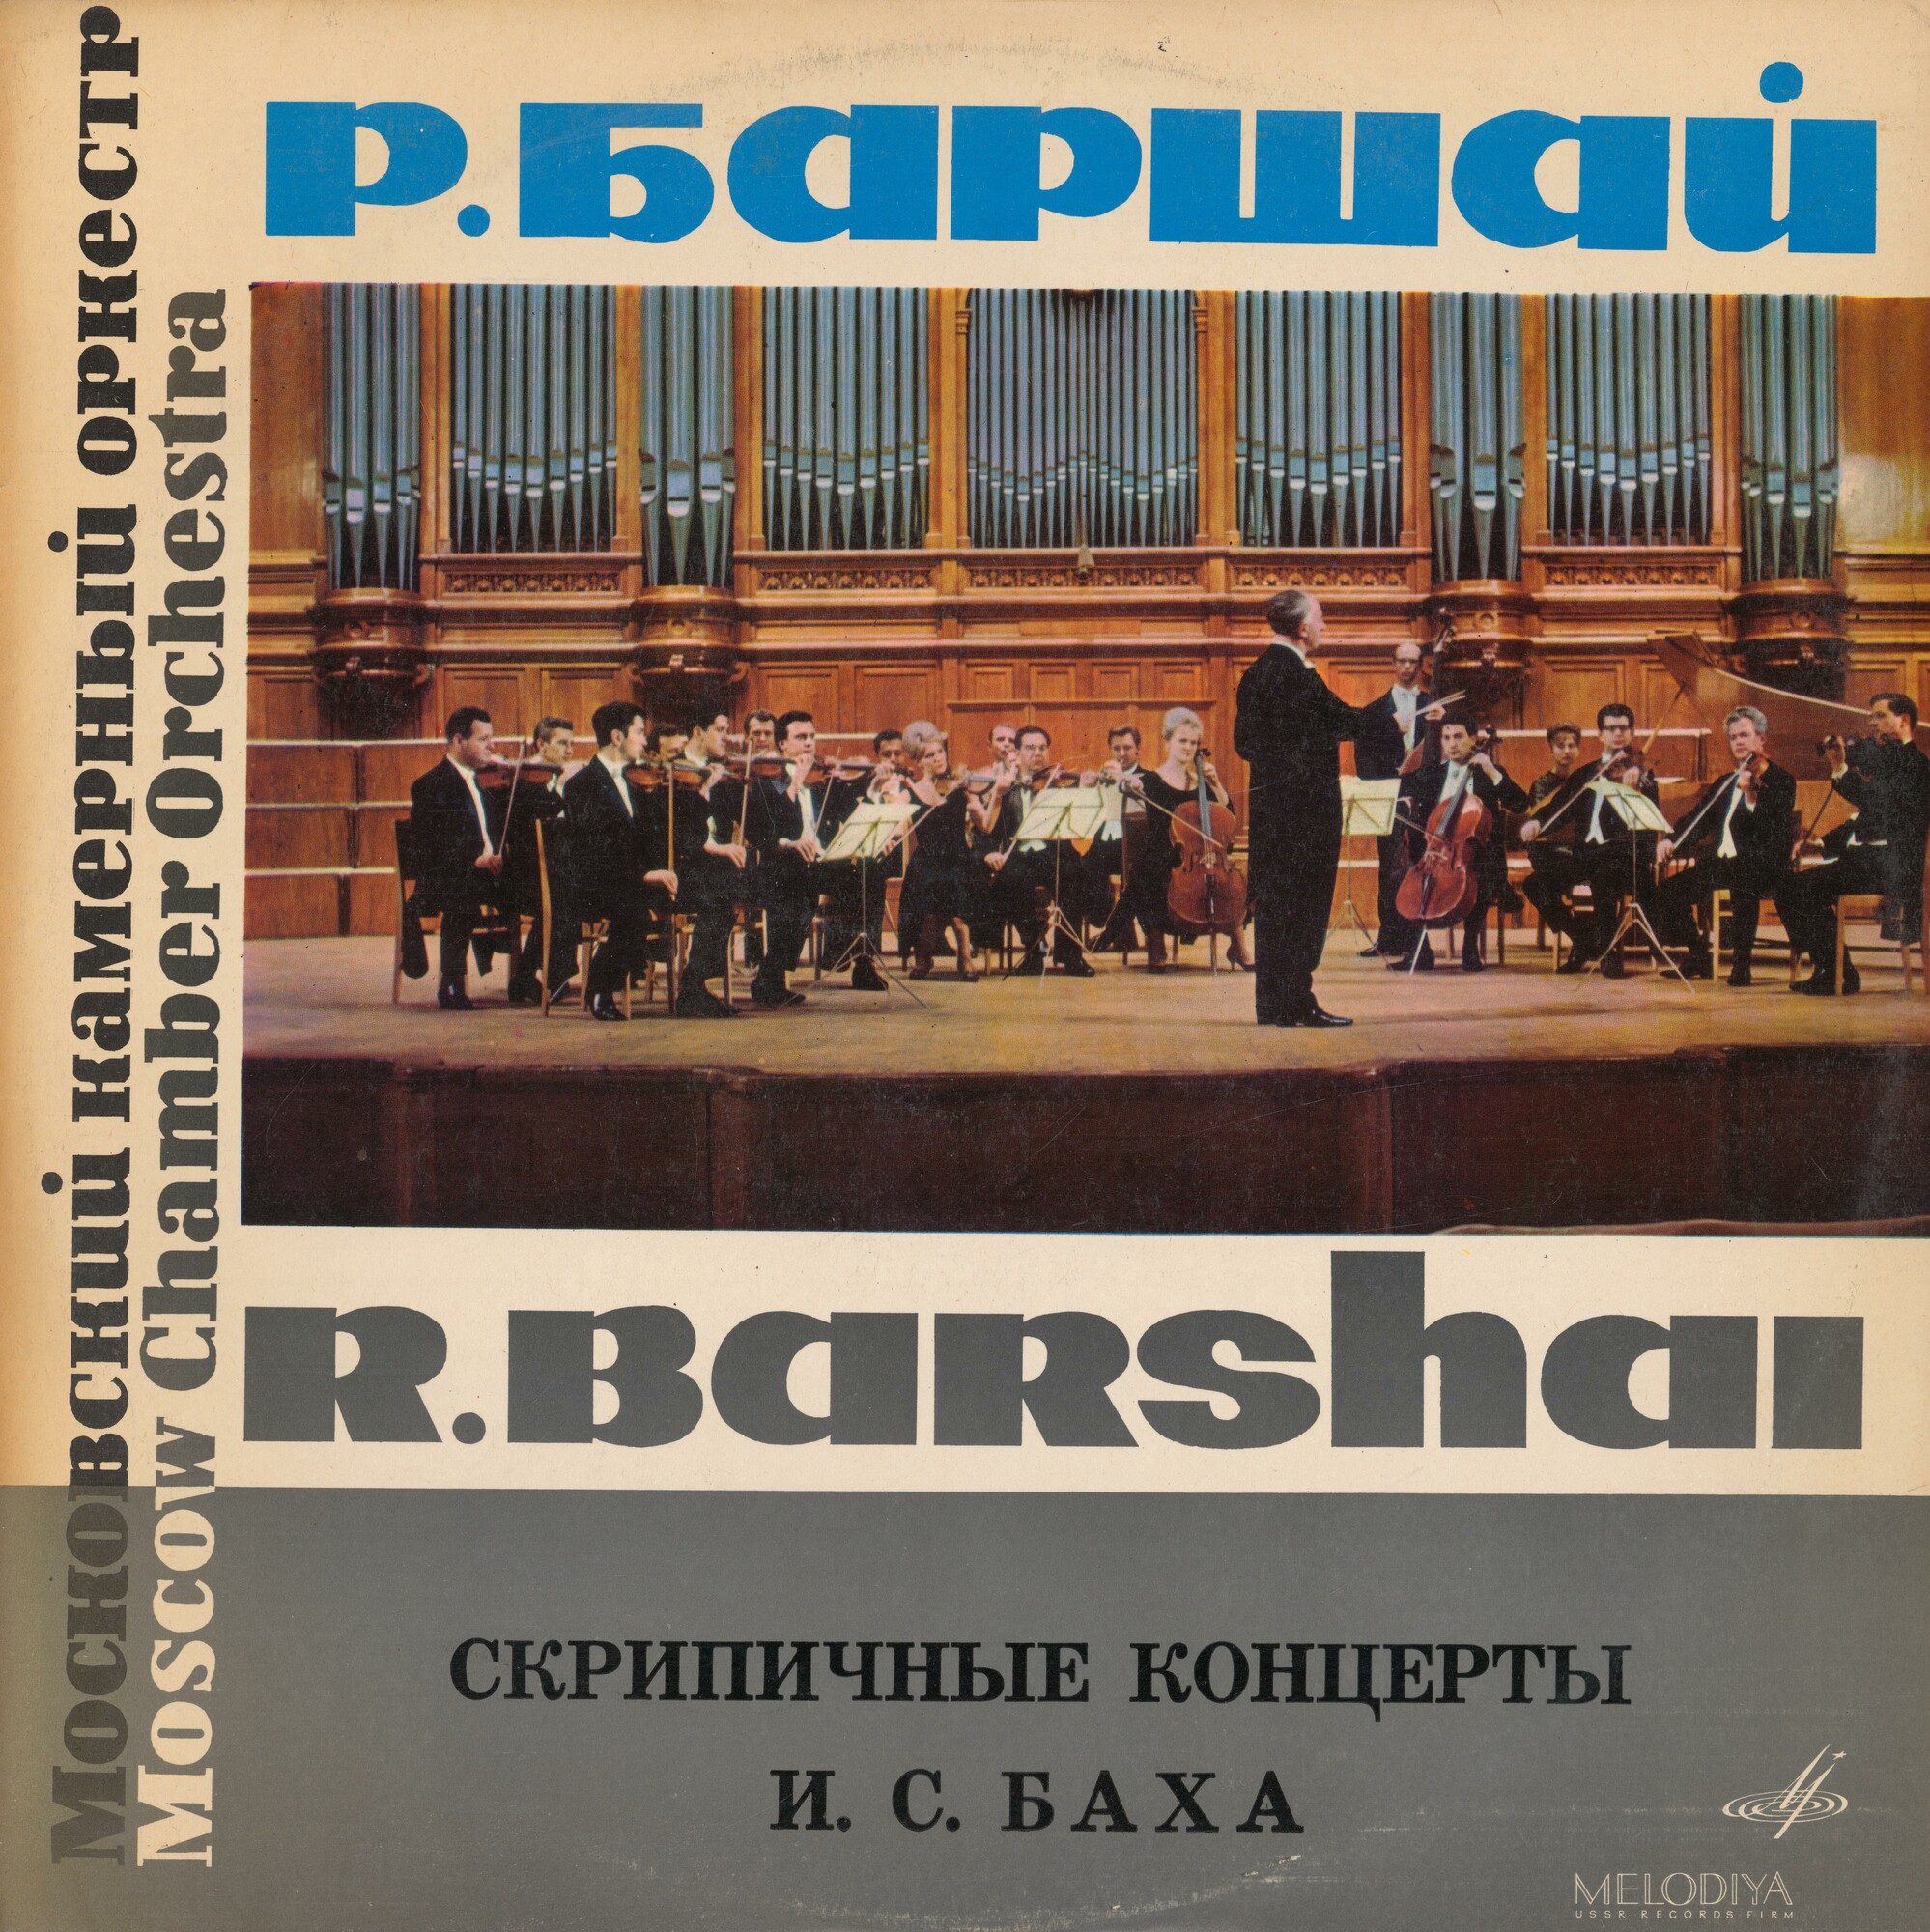 И. С. Бах: Скрипичные концерты (Д. Ойстрах, И. Ойстрах, Р. Баршай)